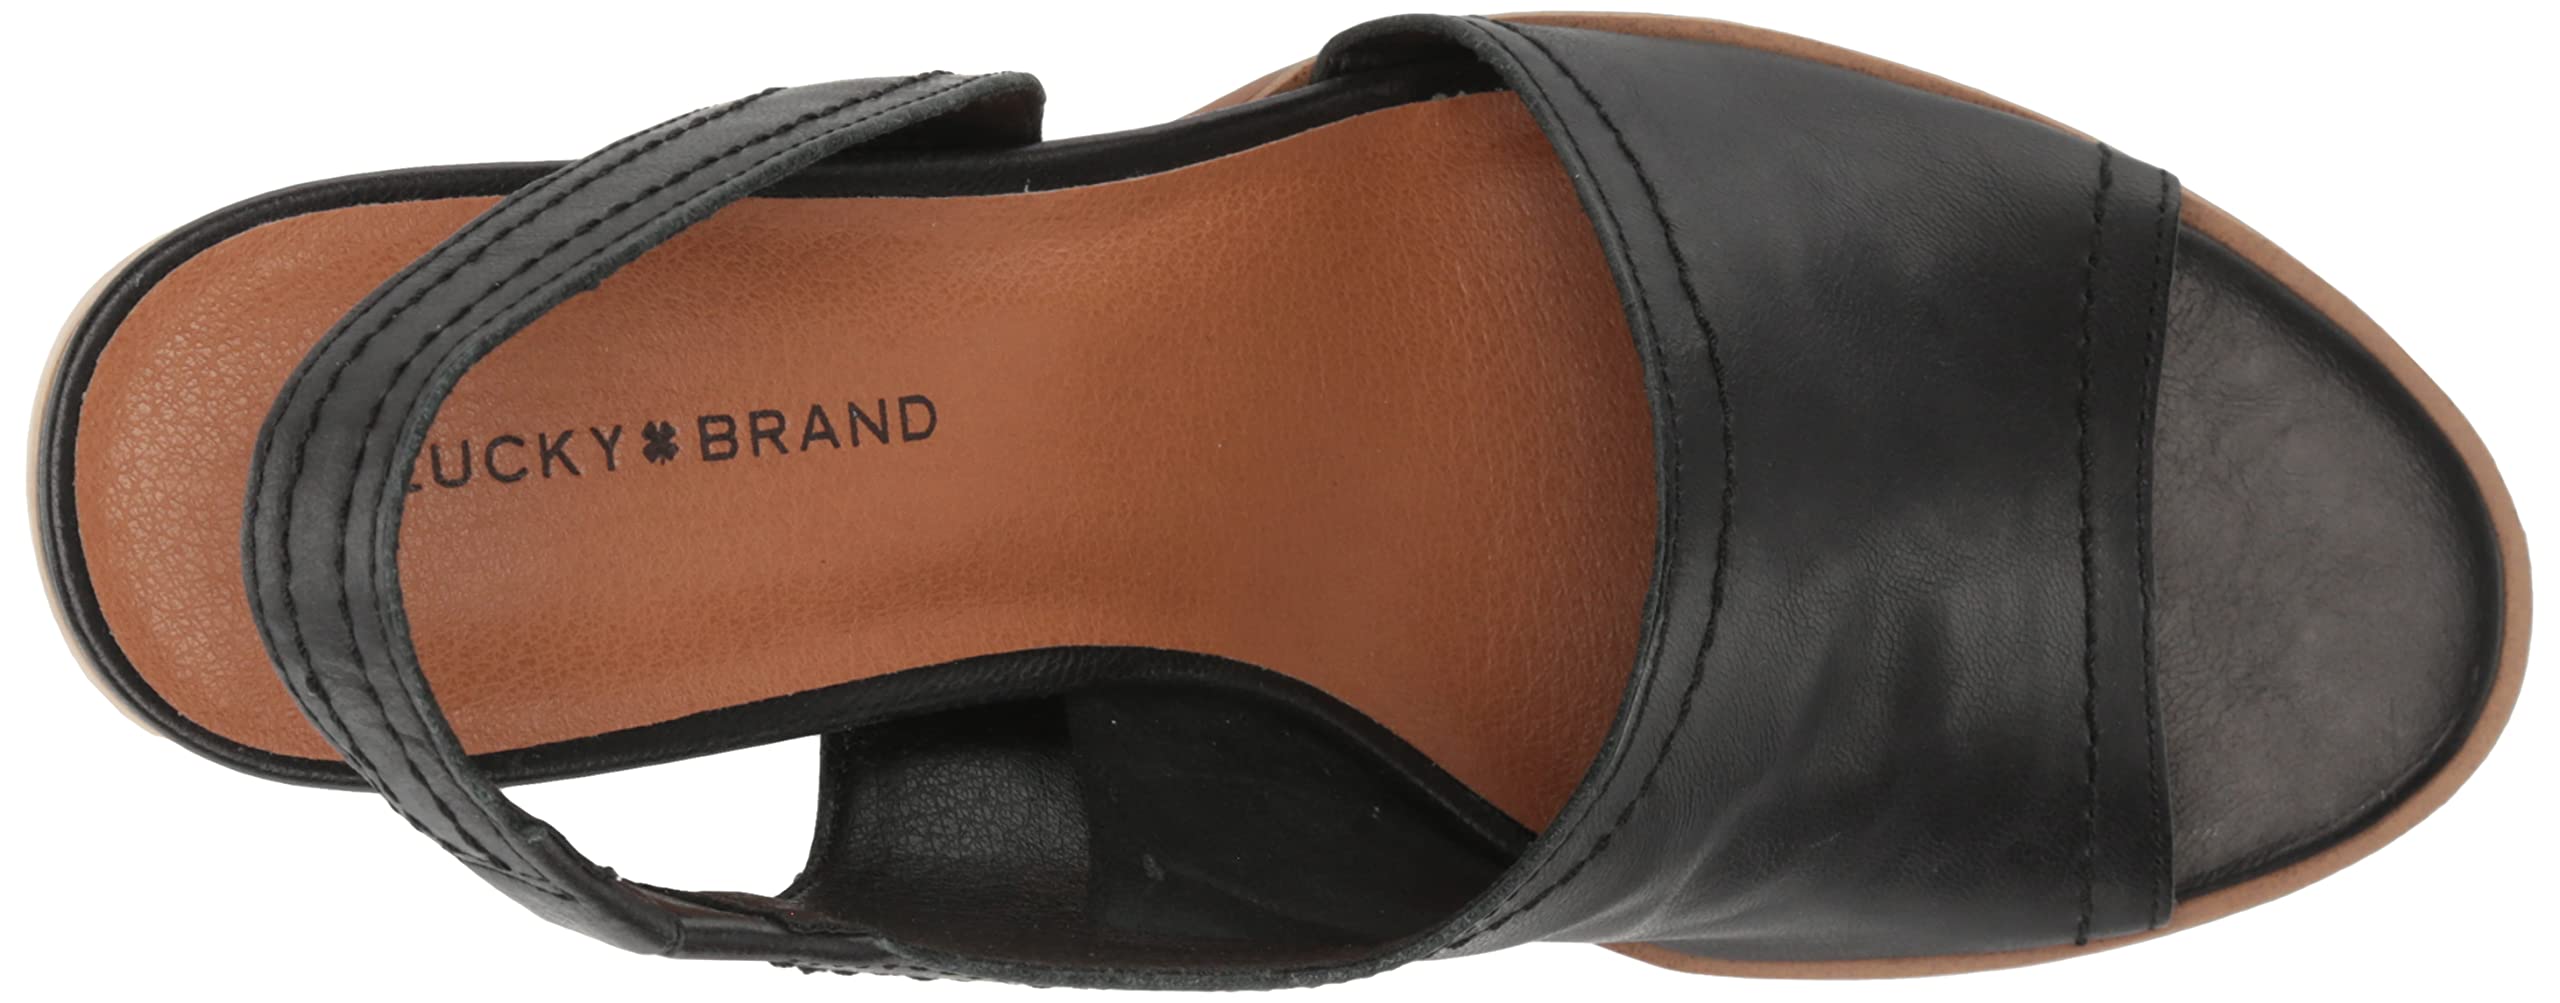 Lucky Brand Women's Xilna High Heel D'Orsay Sandal Heeled